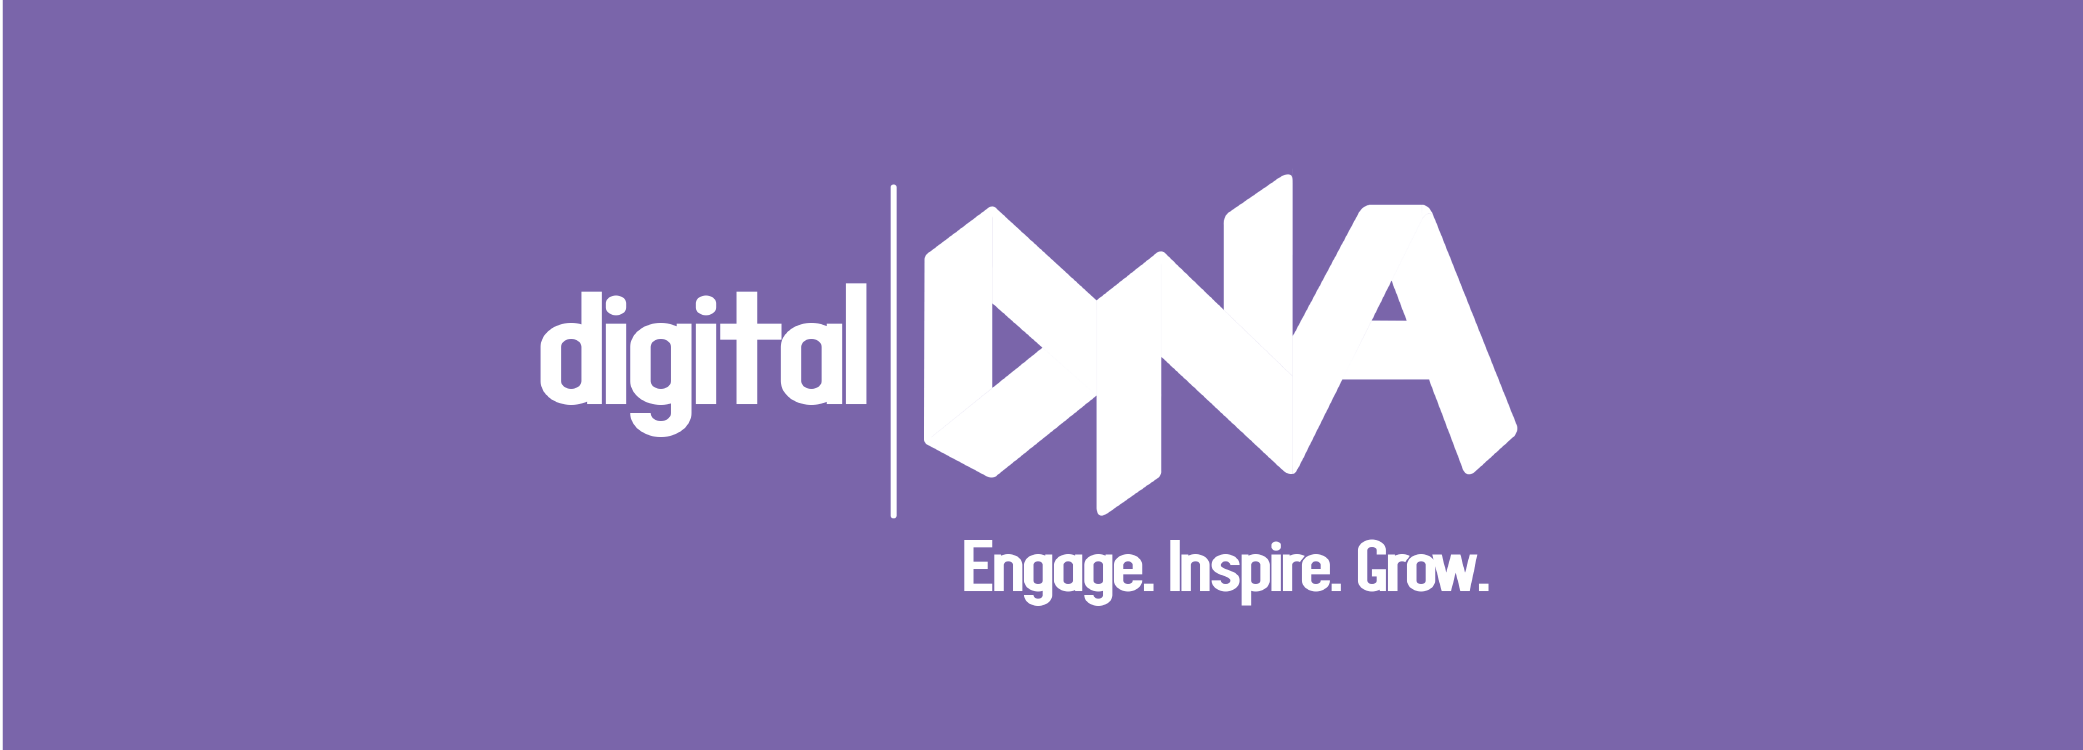 digital DNA